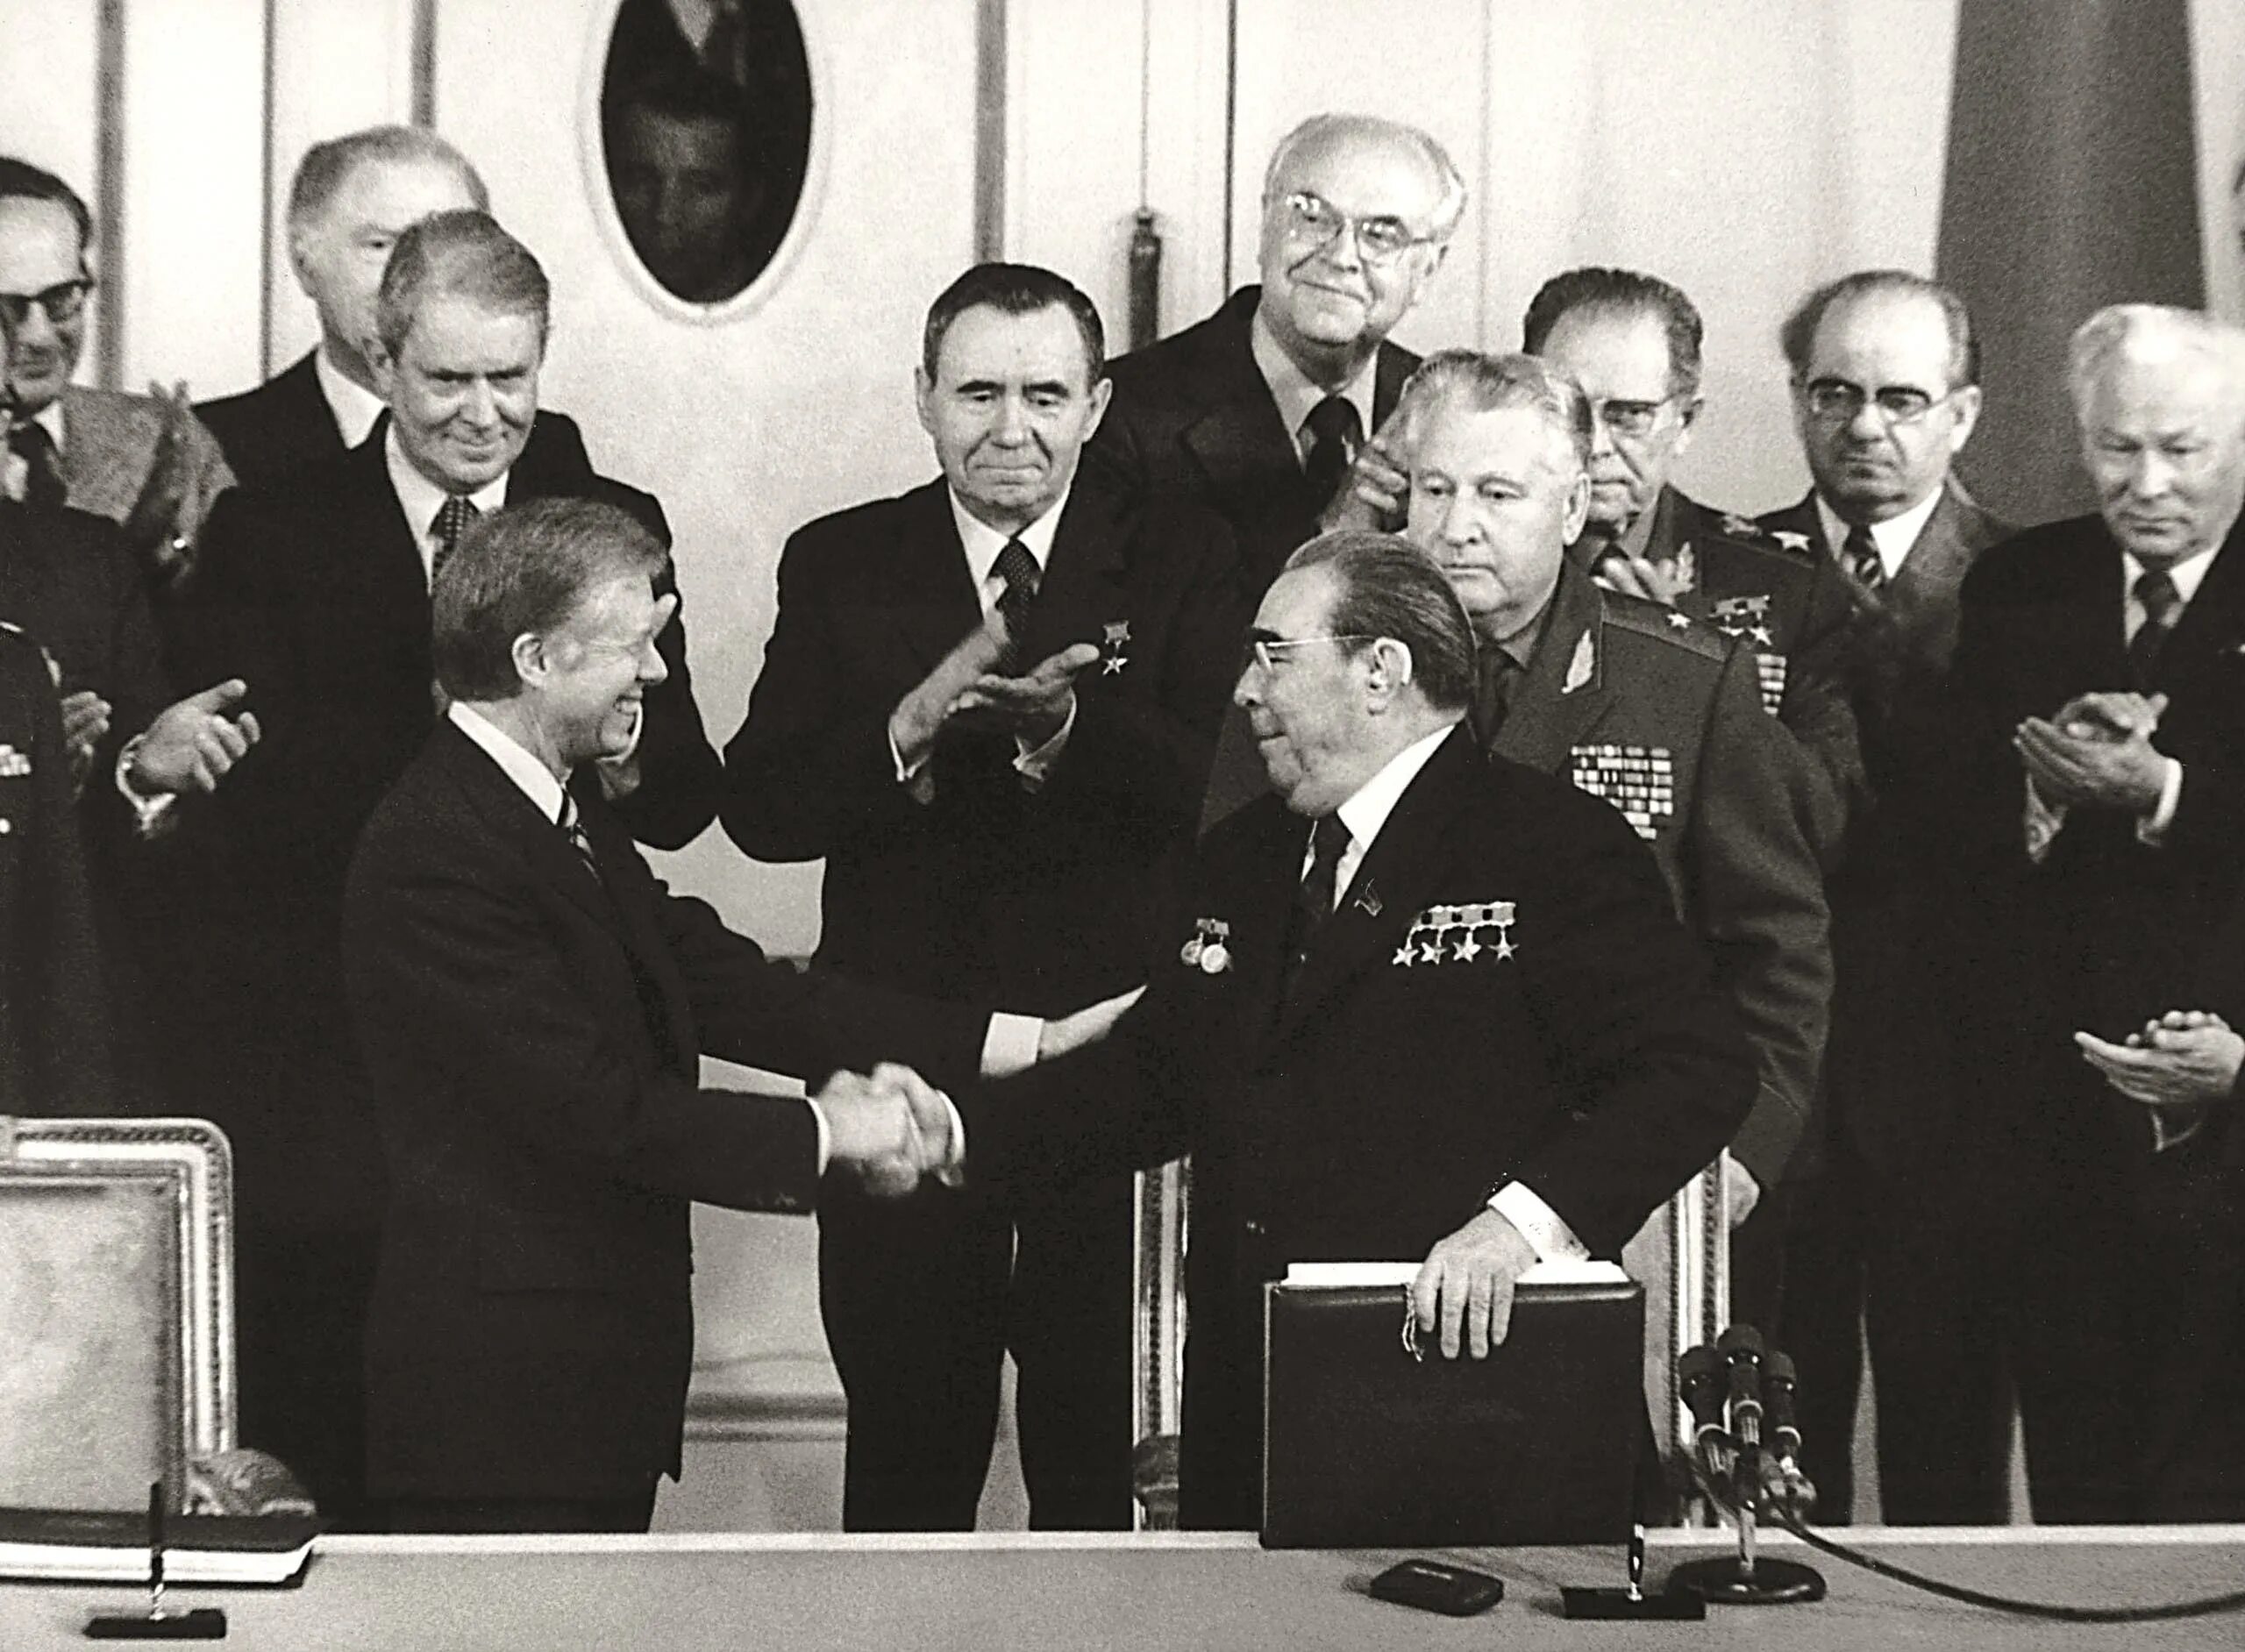 Договор об ограничении осв 2. Брежнев и Картер подписание осв 2. Подписание осв 1 Брежнев и Никсон. Осв-2 Брежнев и Картер. Осв-1 Брежнев Никсон 1972.